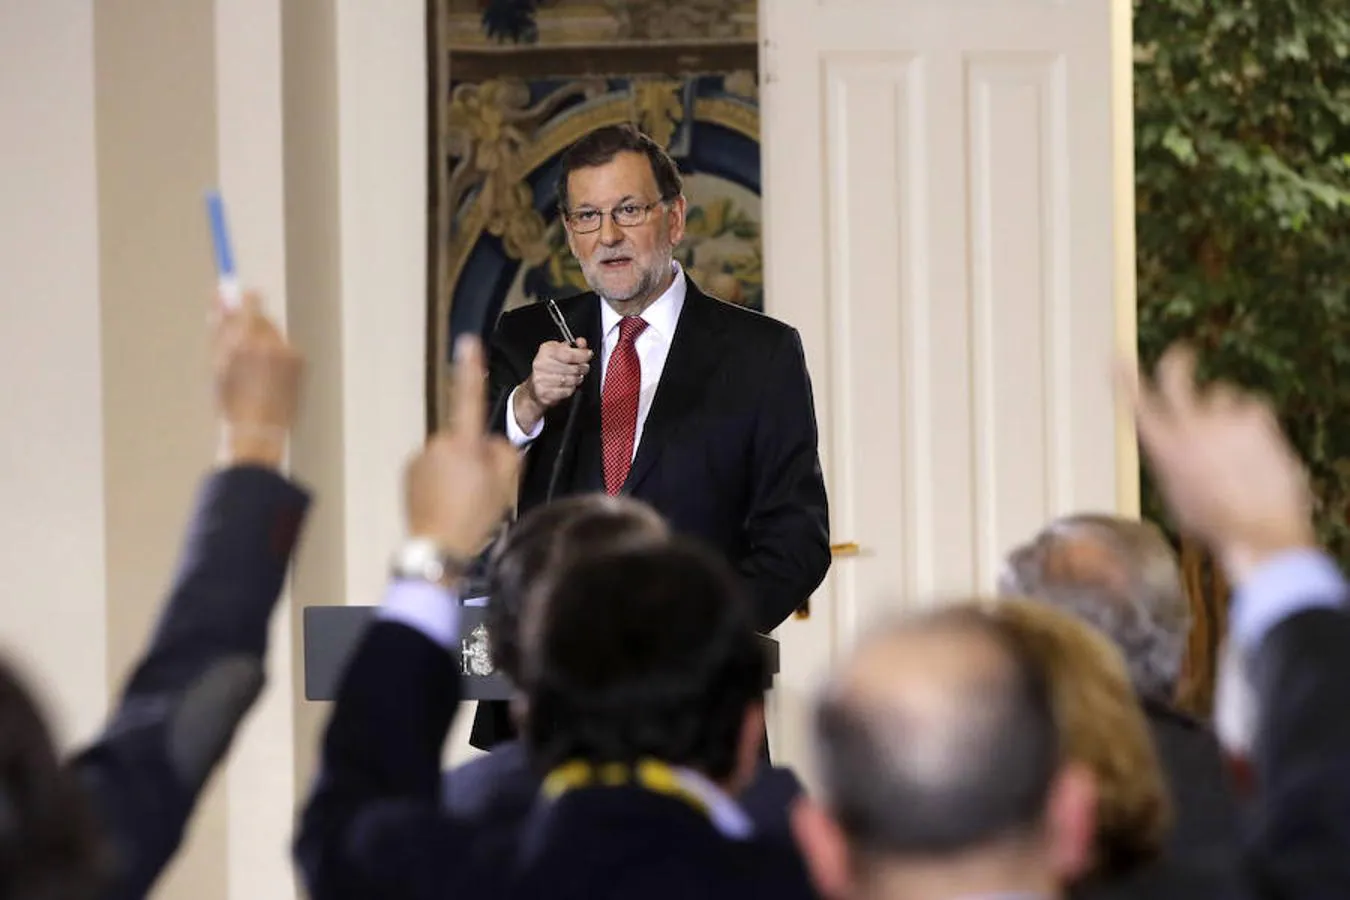 Como presidente del Gobierno, Rajoy tuvo sus reservas de cara a los periodistas. En ocasiones le afearon su escasa disponibilidad. 